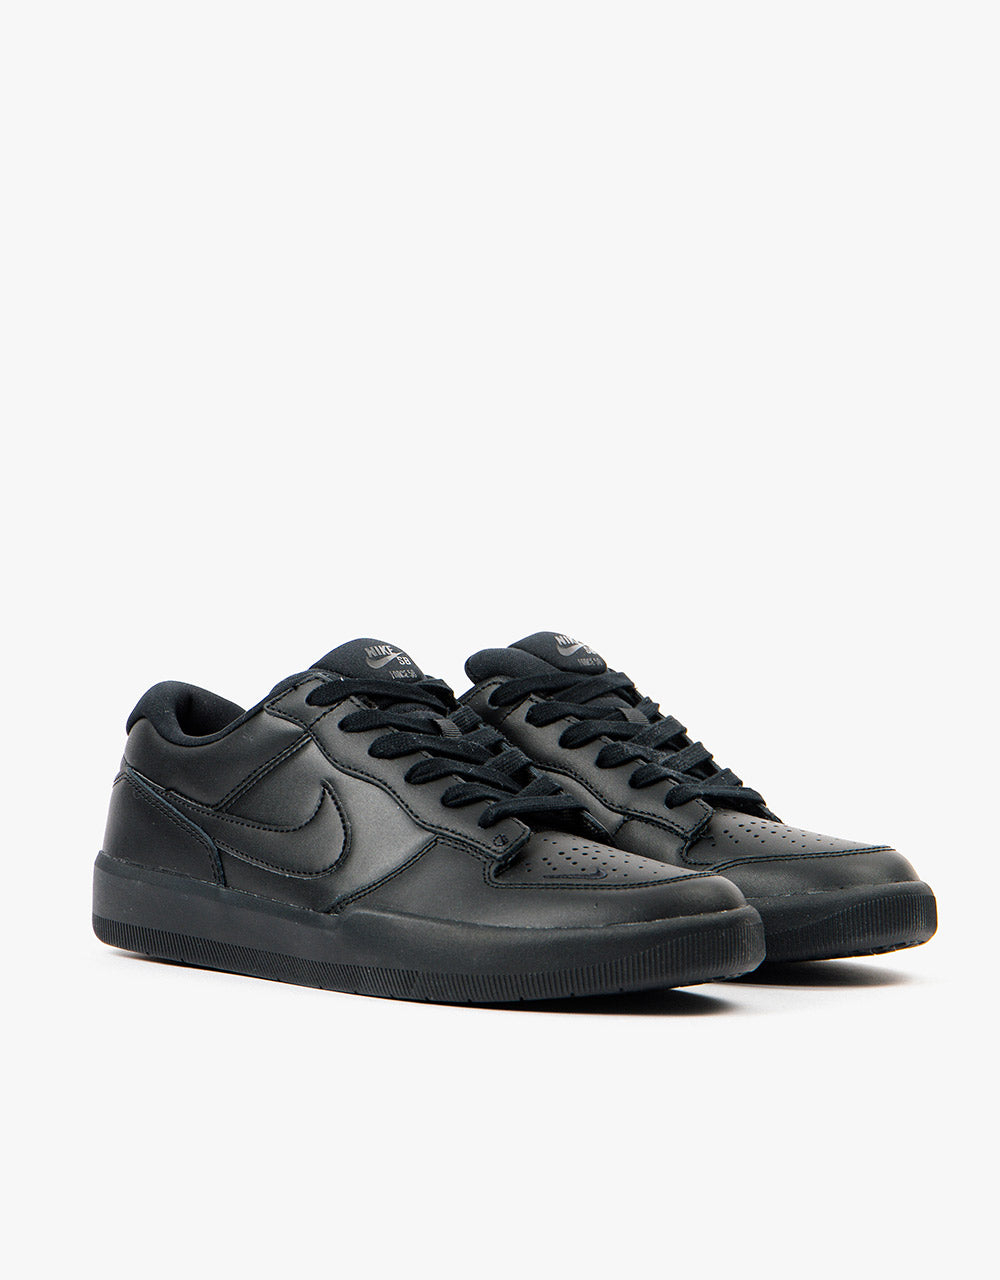 Nike SB Force 58 Premium Leather Skate Shoes - Black/Black-Black-Black